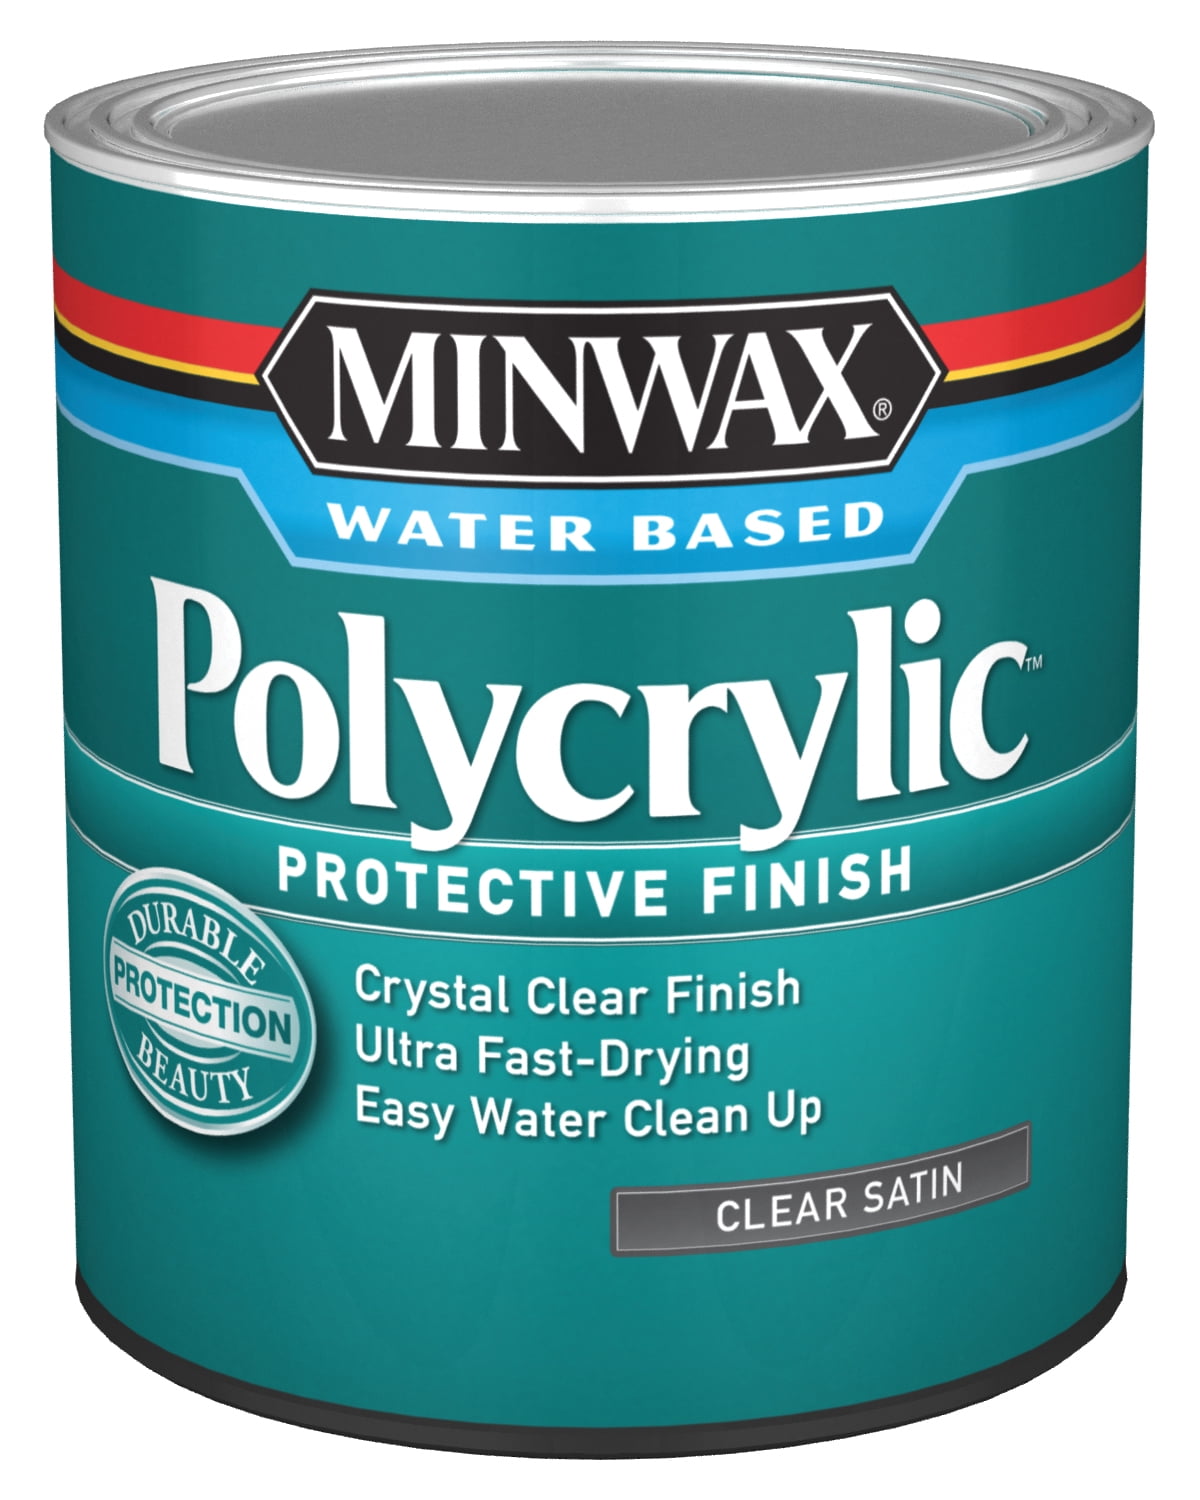 Minwax Polycrylic 